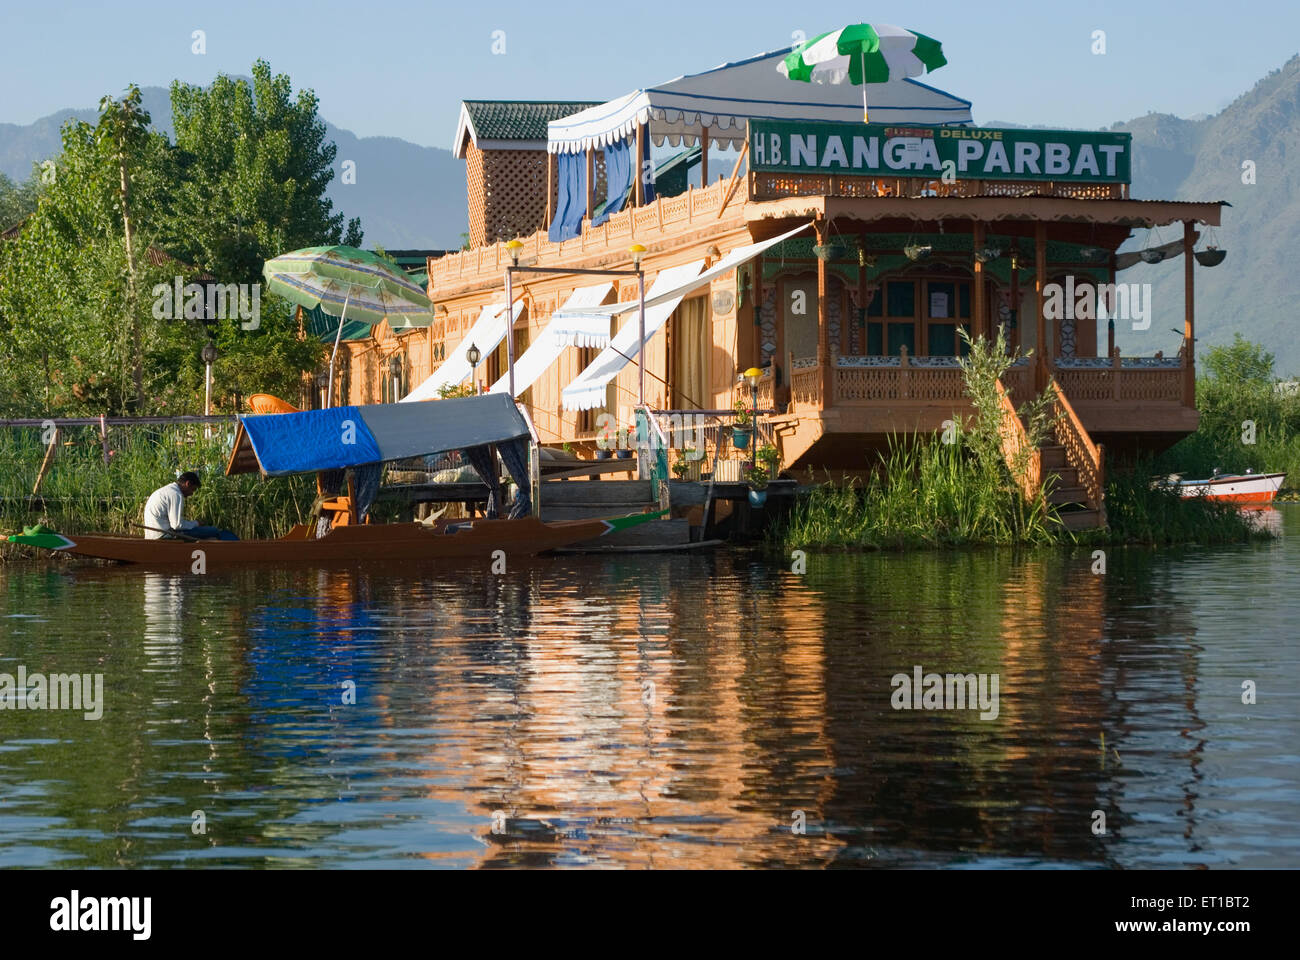 Une maison bateau sur le lac Dal à Srinagar, Jammu-et-Cachemire Inde Asie Banque D'Images